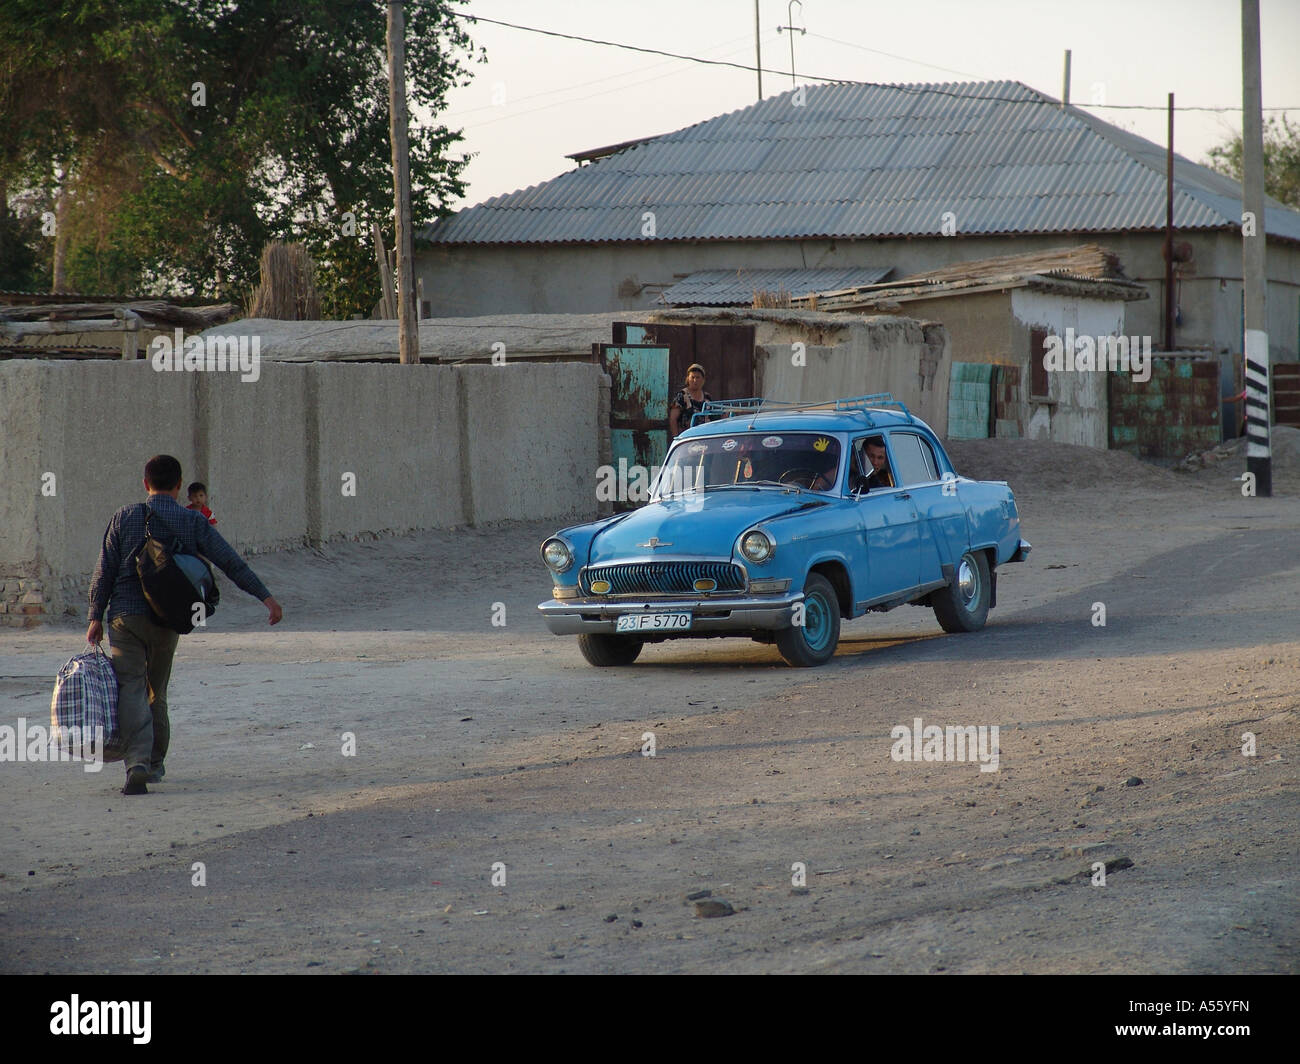 Painet iw2420 in Zentralasien Sowjetunion Bilder Islam moslem Seiden Straße Usbekistan Straße Szene Moynak Land entwickelt Stockfoto